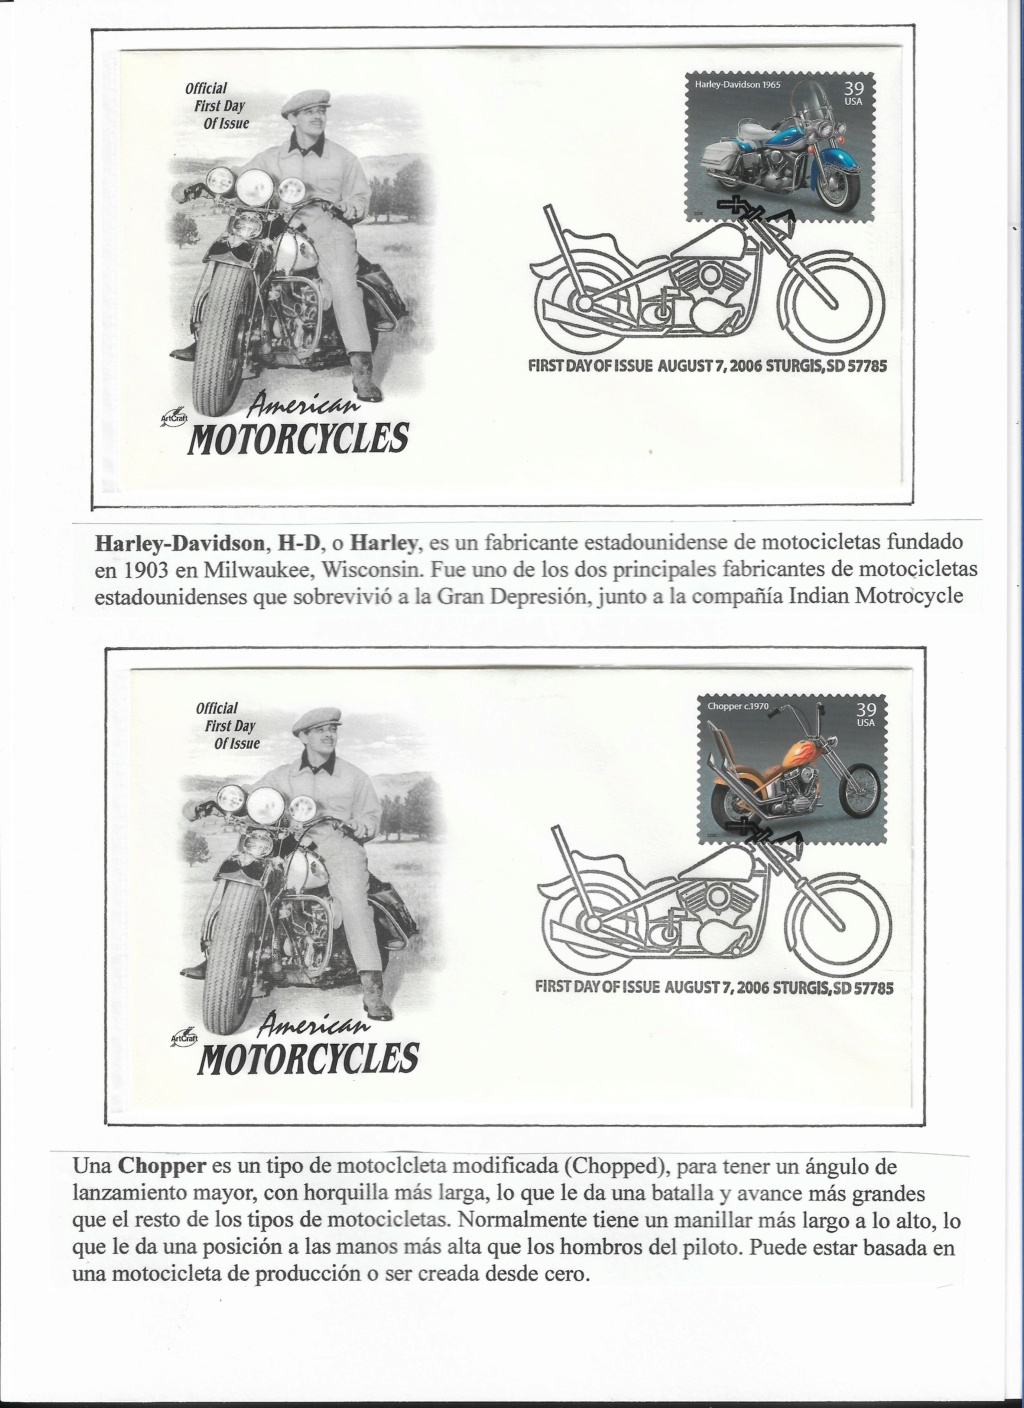 LA MOTO EN LA FILATELIA / Motorcycle in Philately - Página 11 272